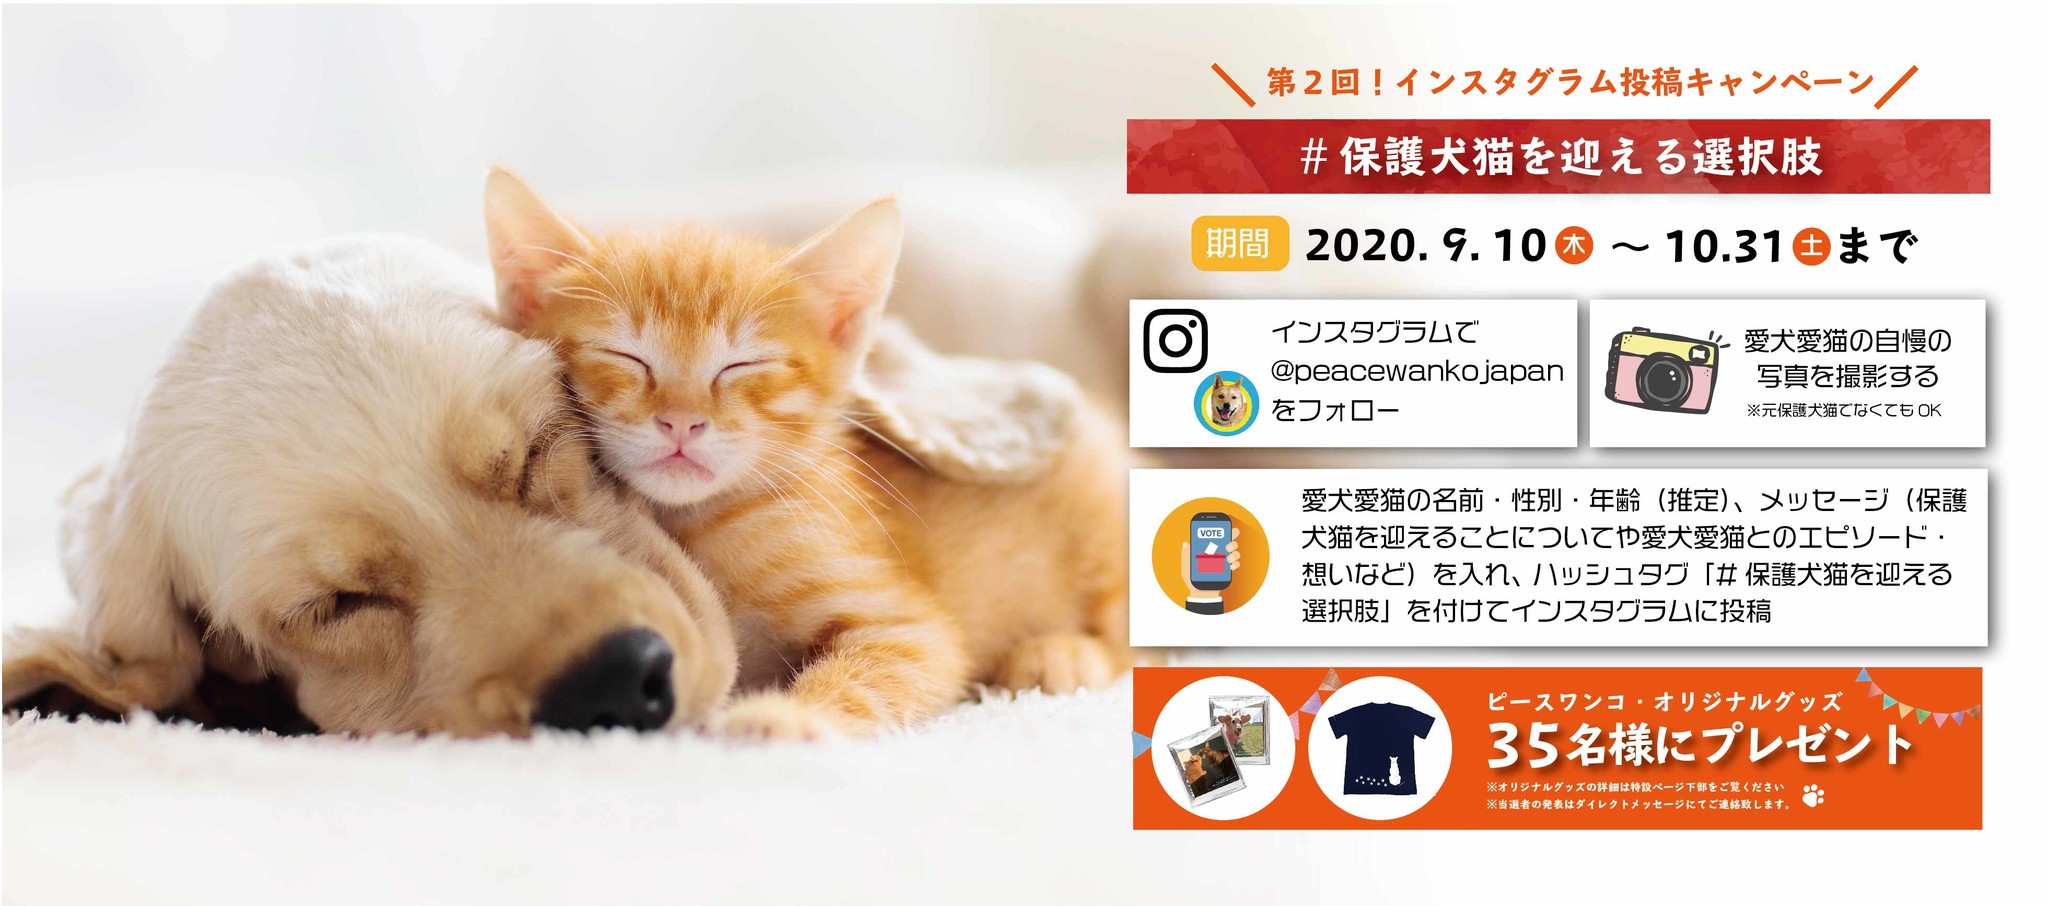 第2回 保護犬猫を迎える選択肢 Instagram投稿キャンペーン開催 ピースウィンズ ジャパンのプレスリリース